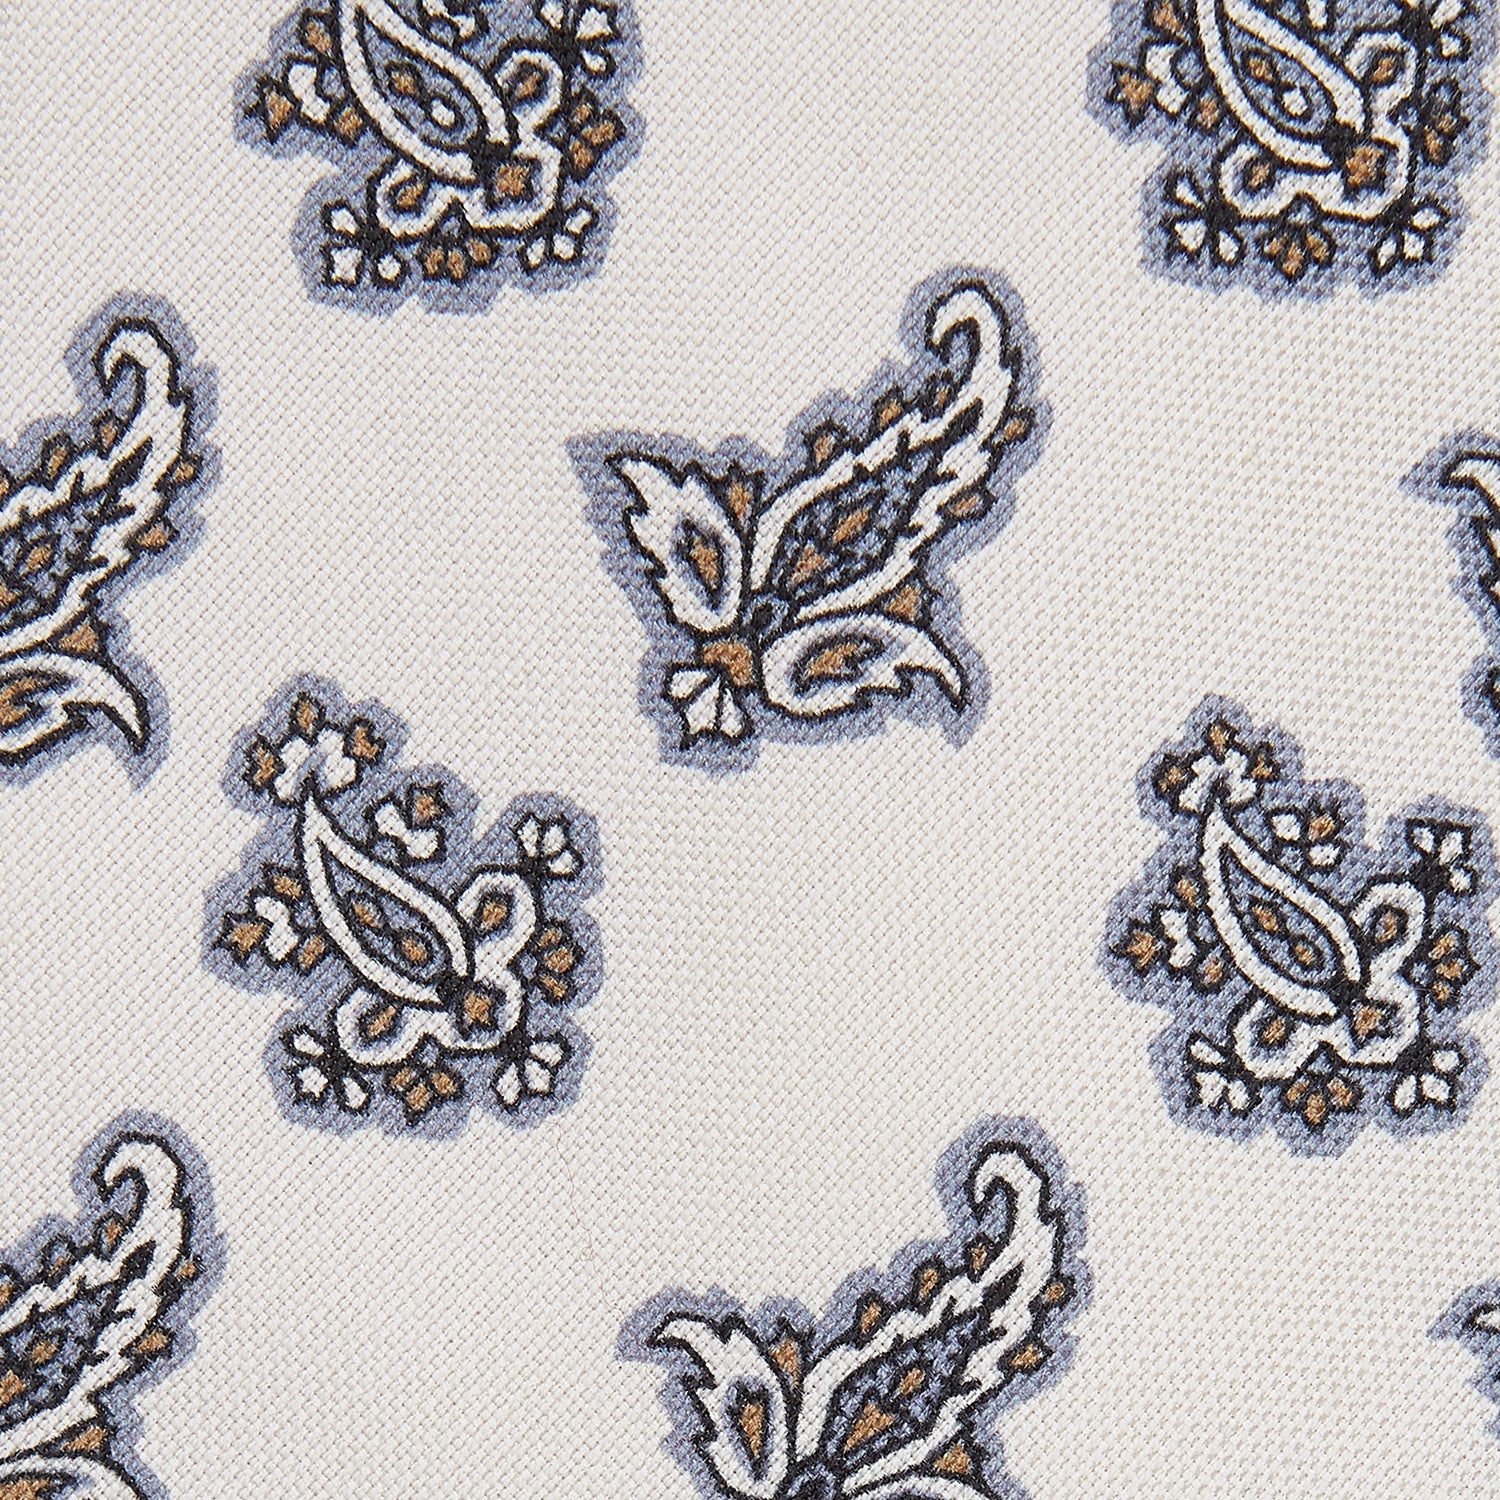 Ecru Paisley Floral Cotton Silk Blend Tie